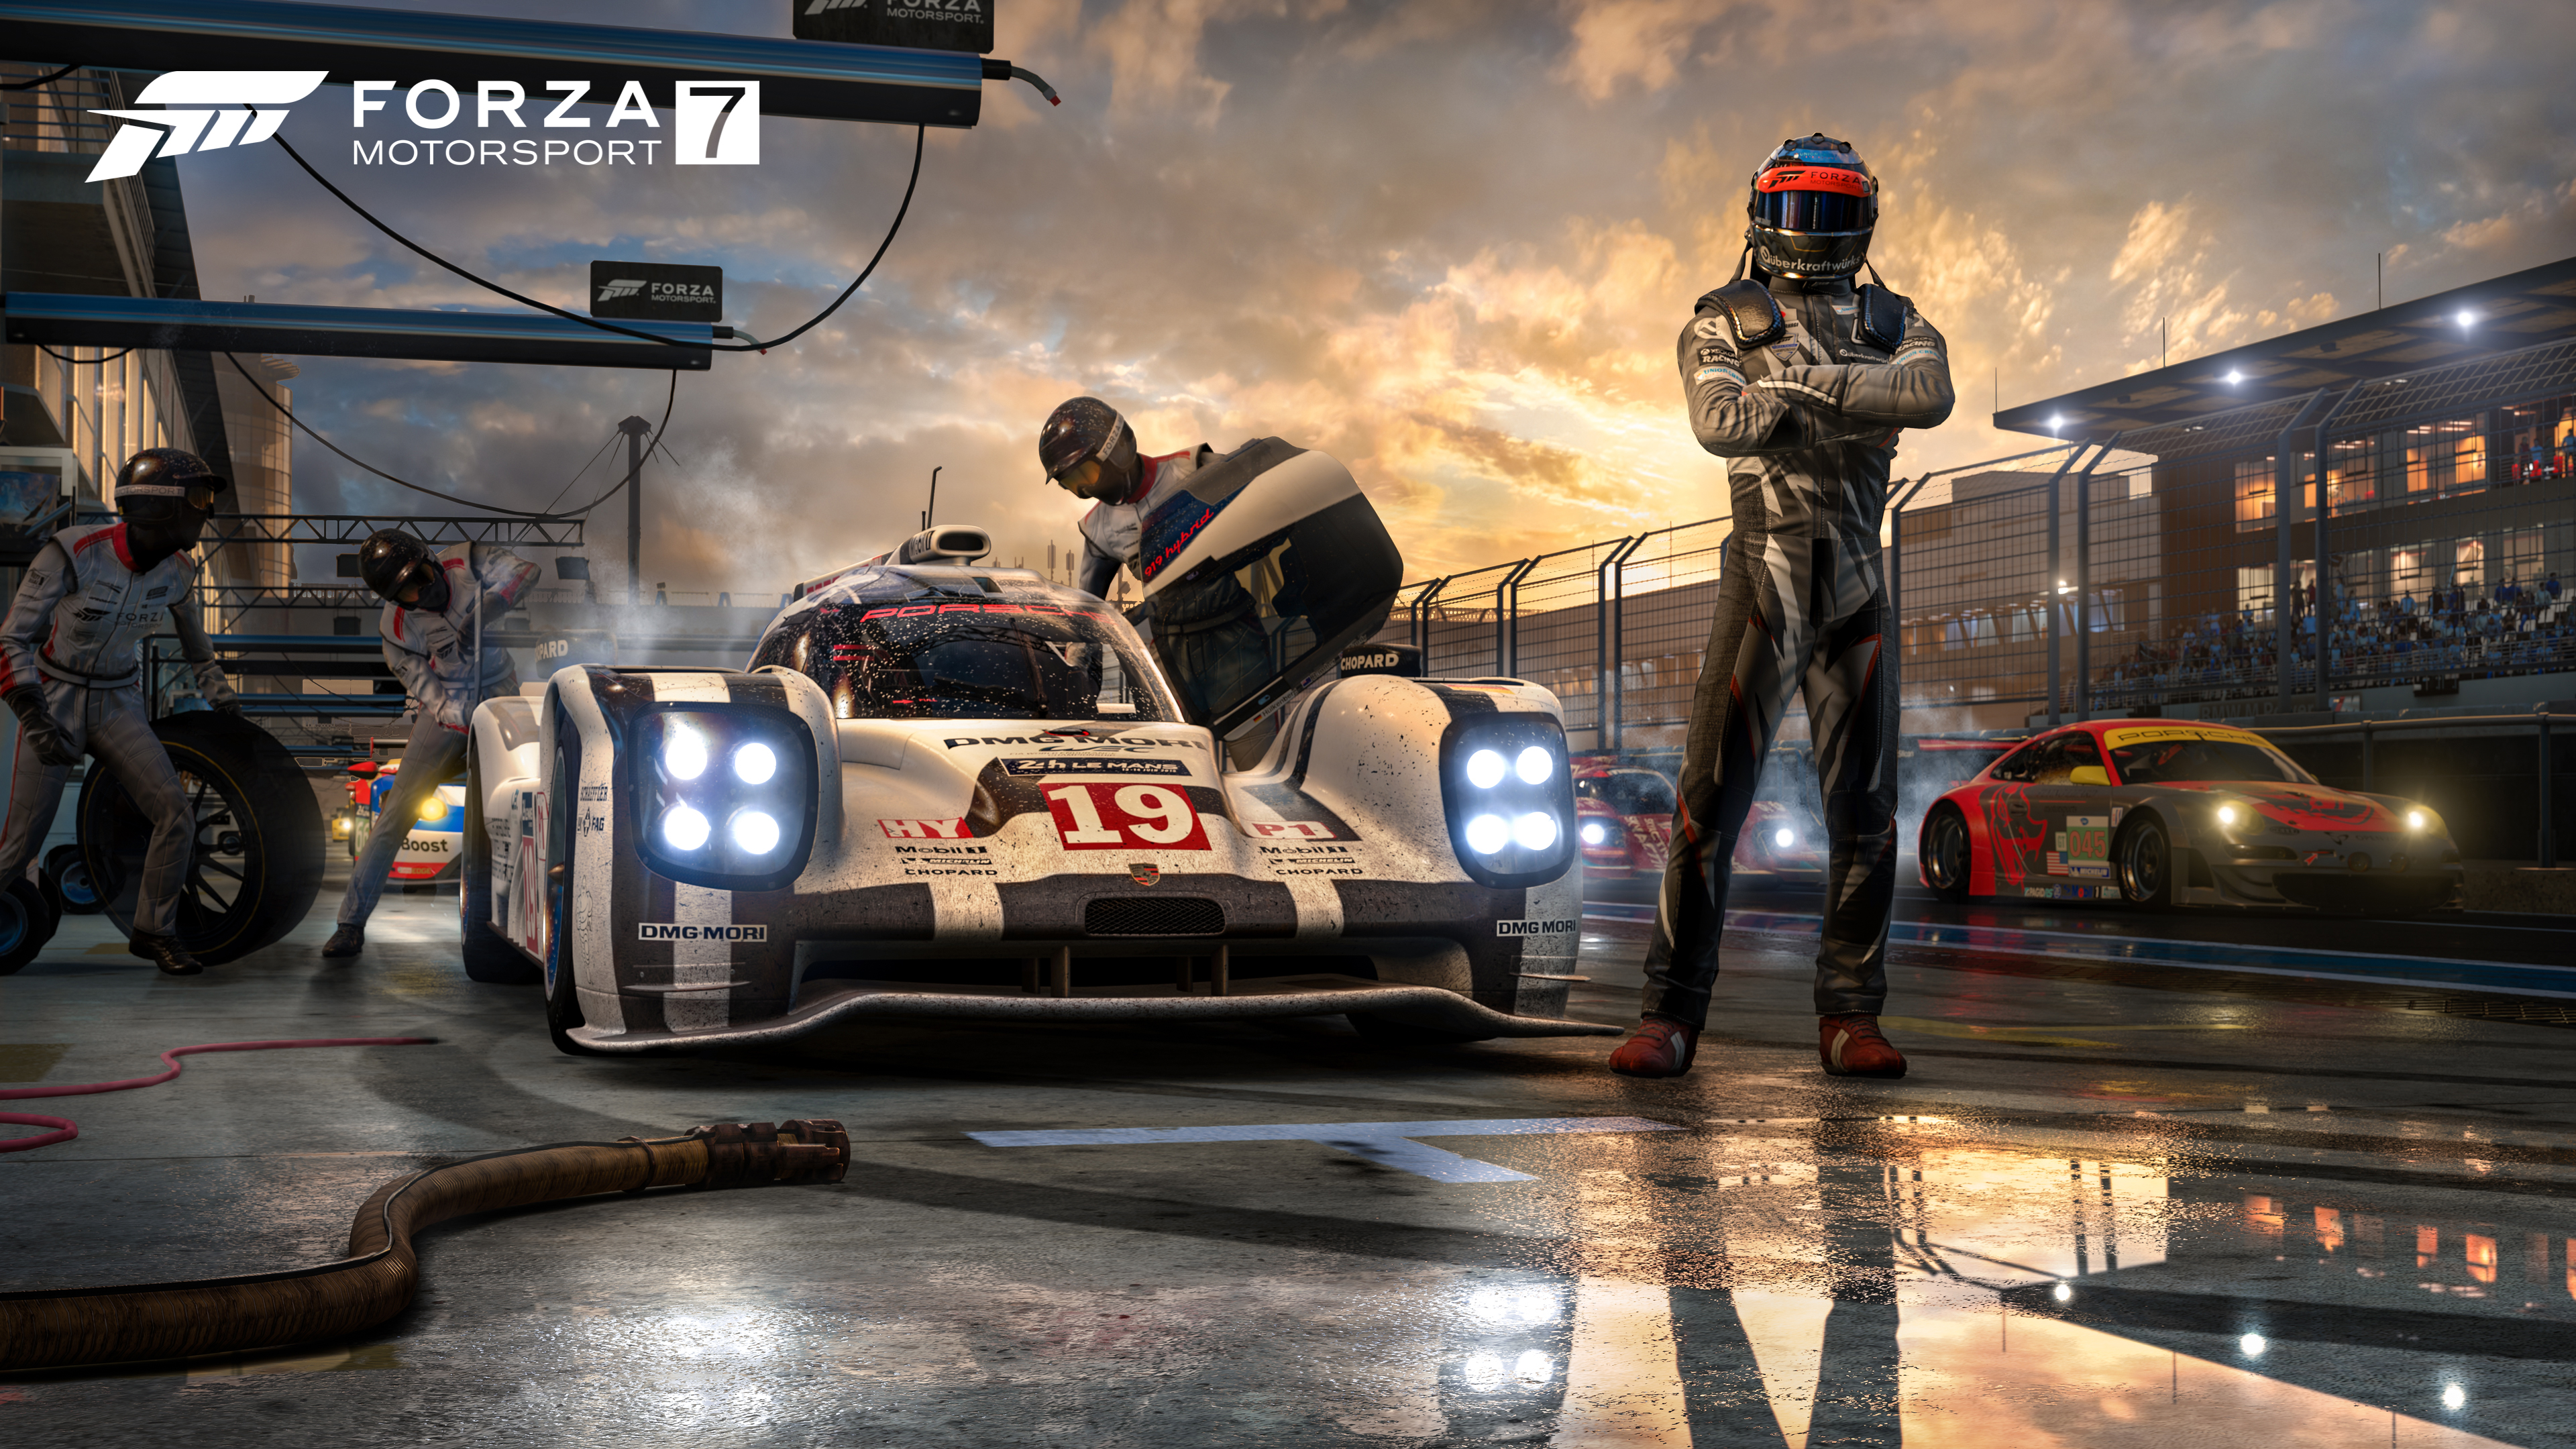 Descargar fondos de escritorio de Forza Motorsport 7 HD